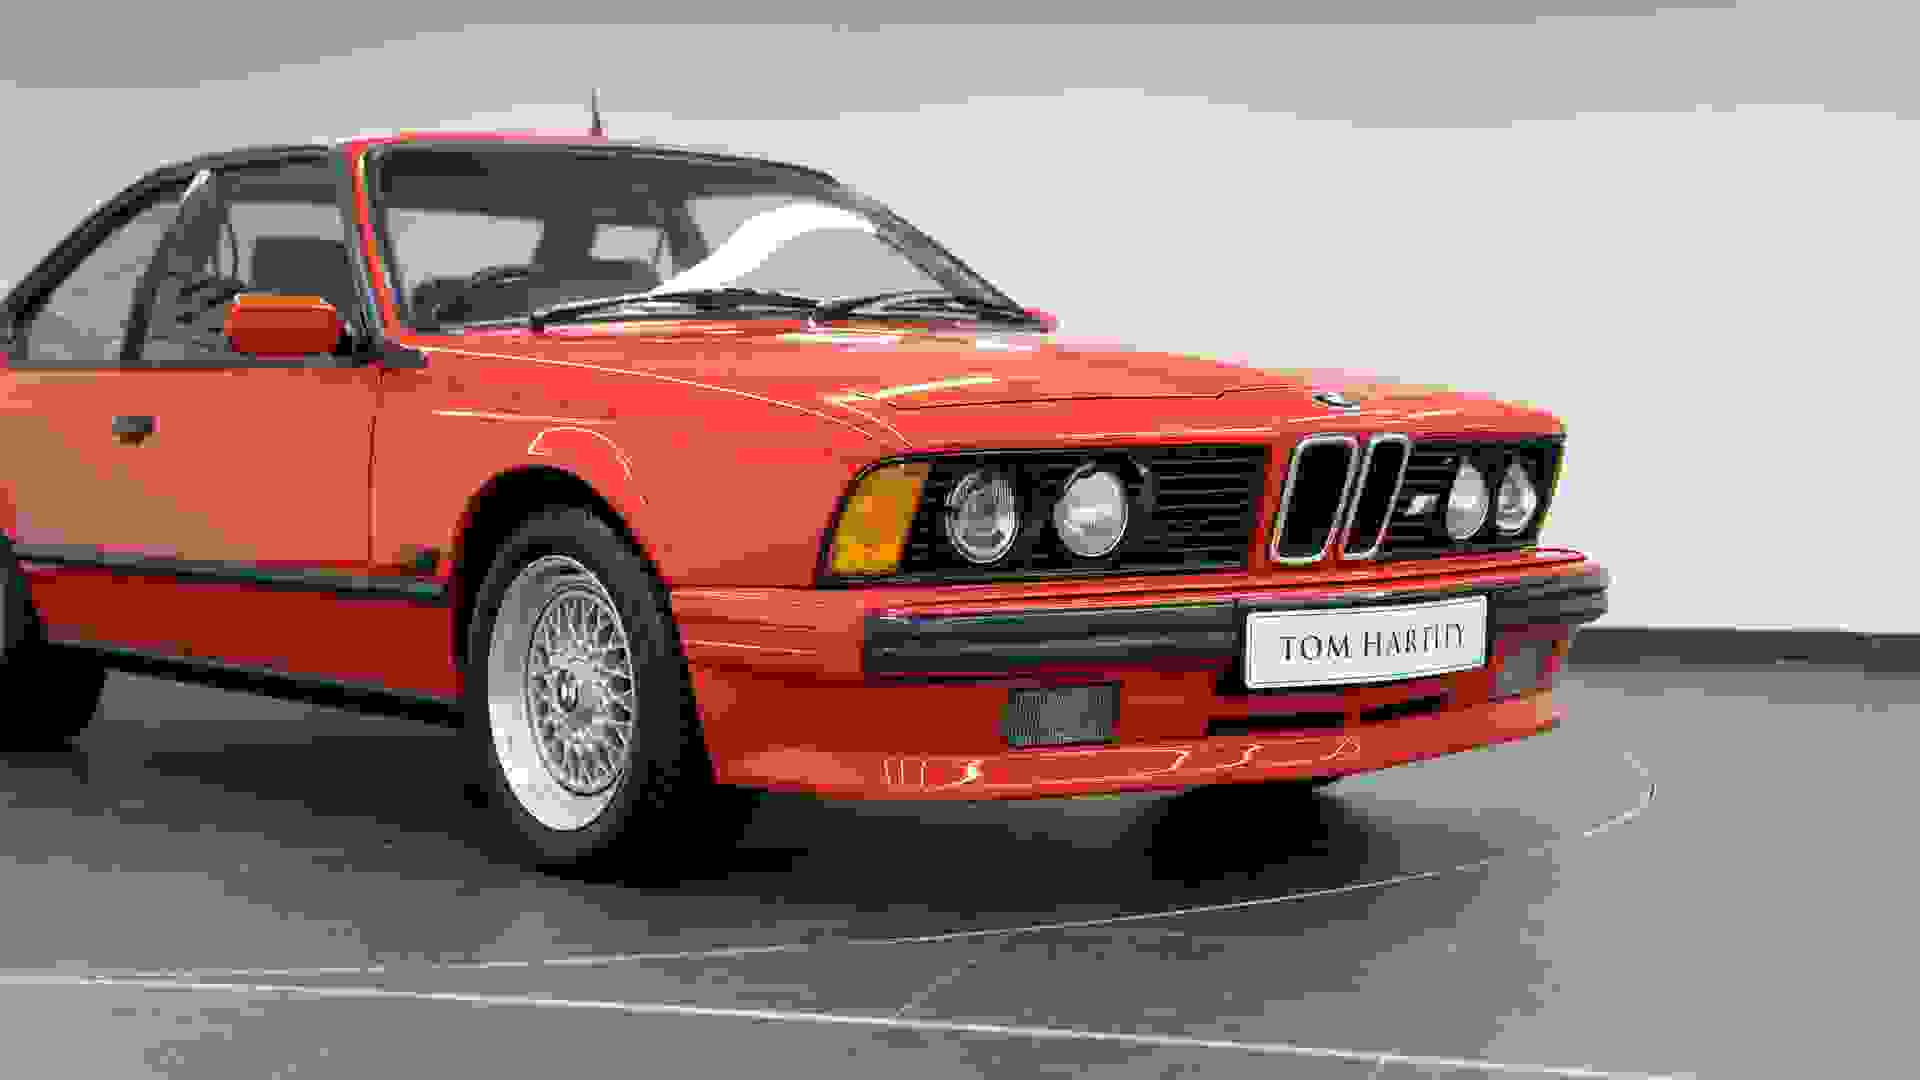 BMW 635 CSi Photo e644d1e5-41bb-48f4-b0b2-8ee4df13e1c9.jpg